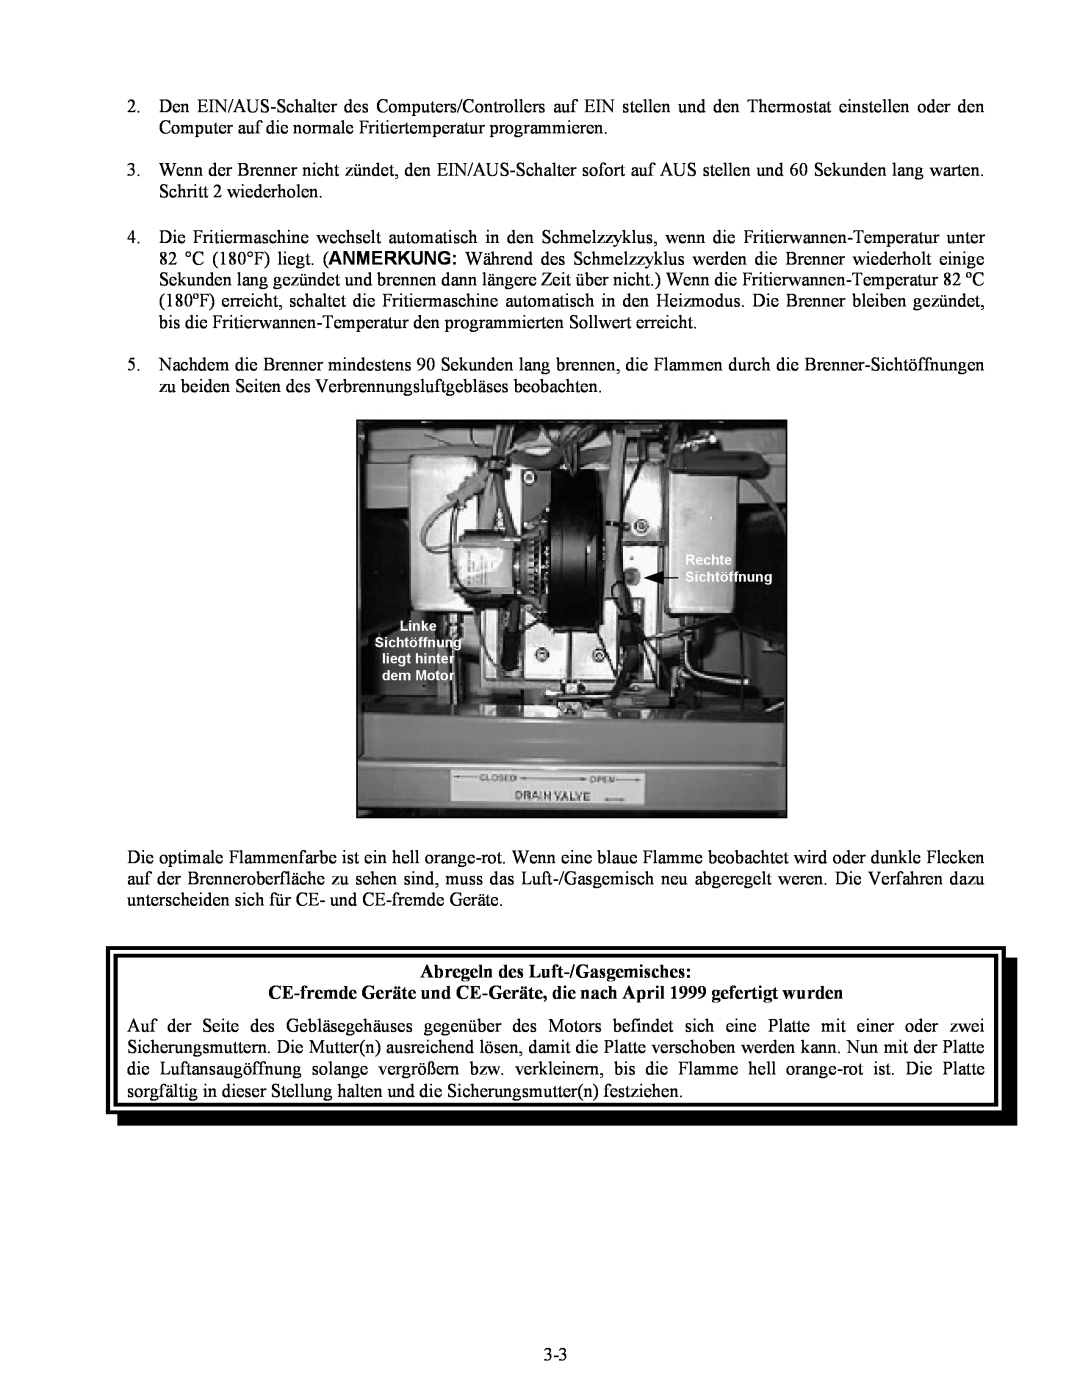 Frymaster Series H50 manual Abregeln des Luft-/Gasgemisches 